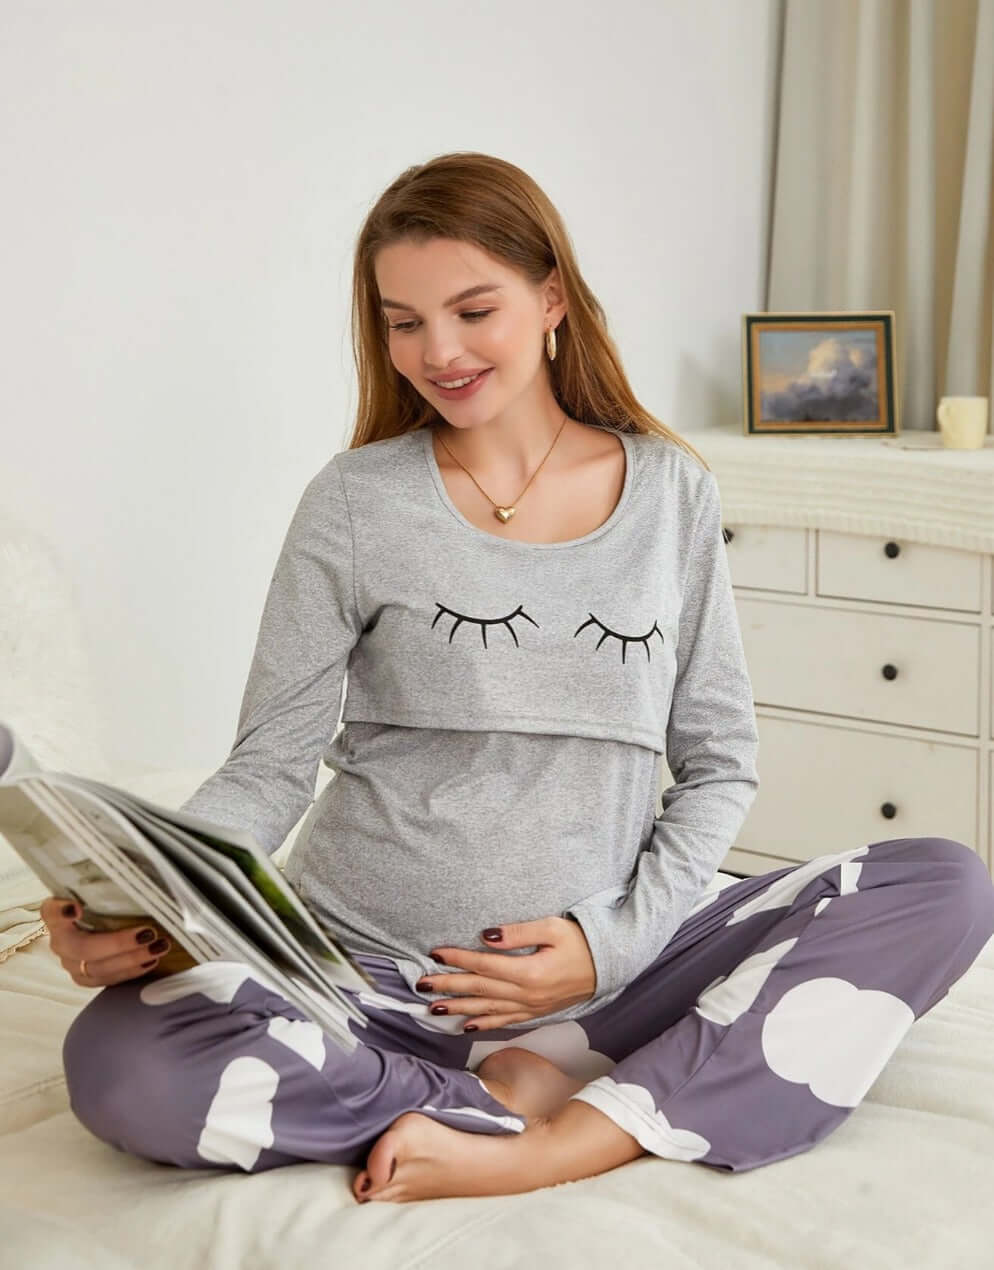 Pijama Maternitate pentru Alaptare infant-ro